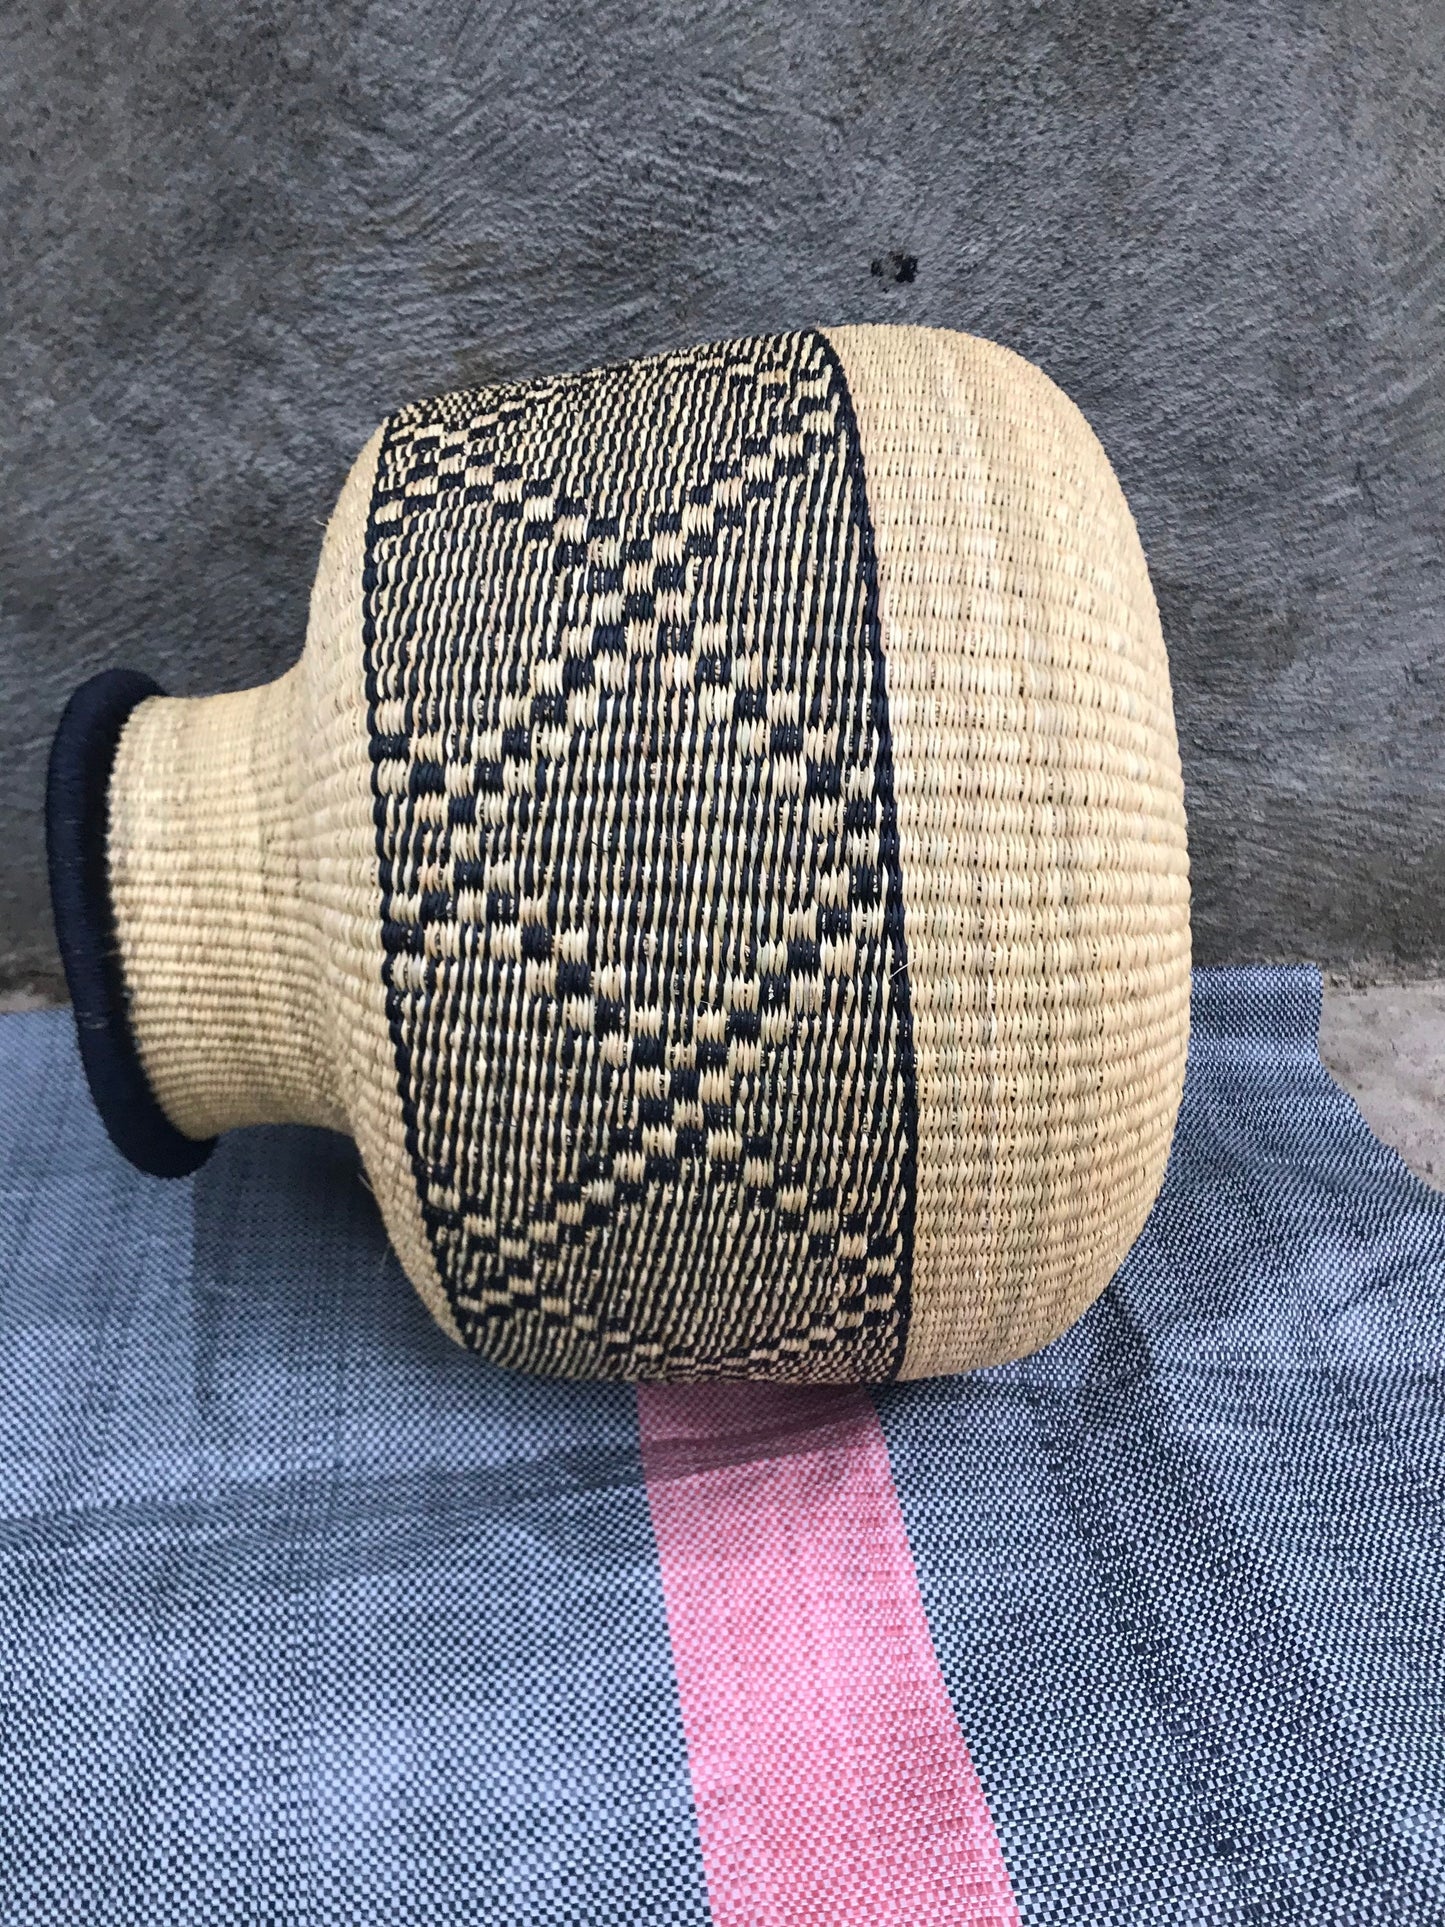 Bolga Basket, African Basket, Handmade Basket, Ghana Basket, Gift for her, Personalized gift, Pot Basket 002